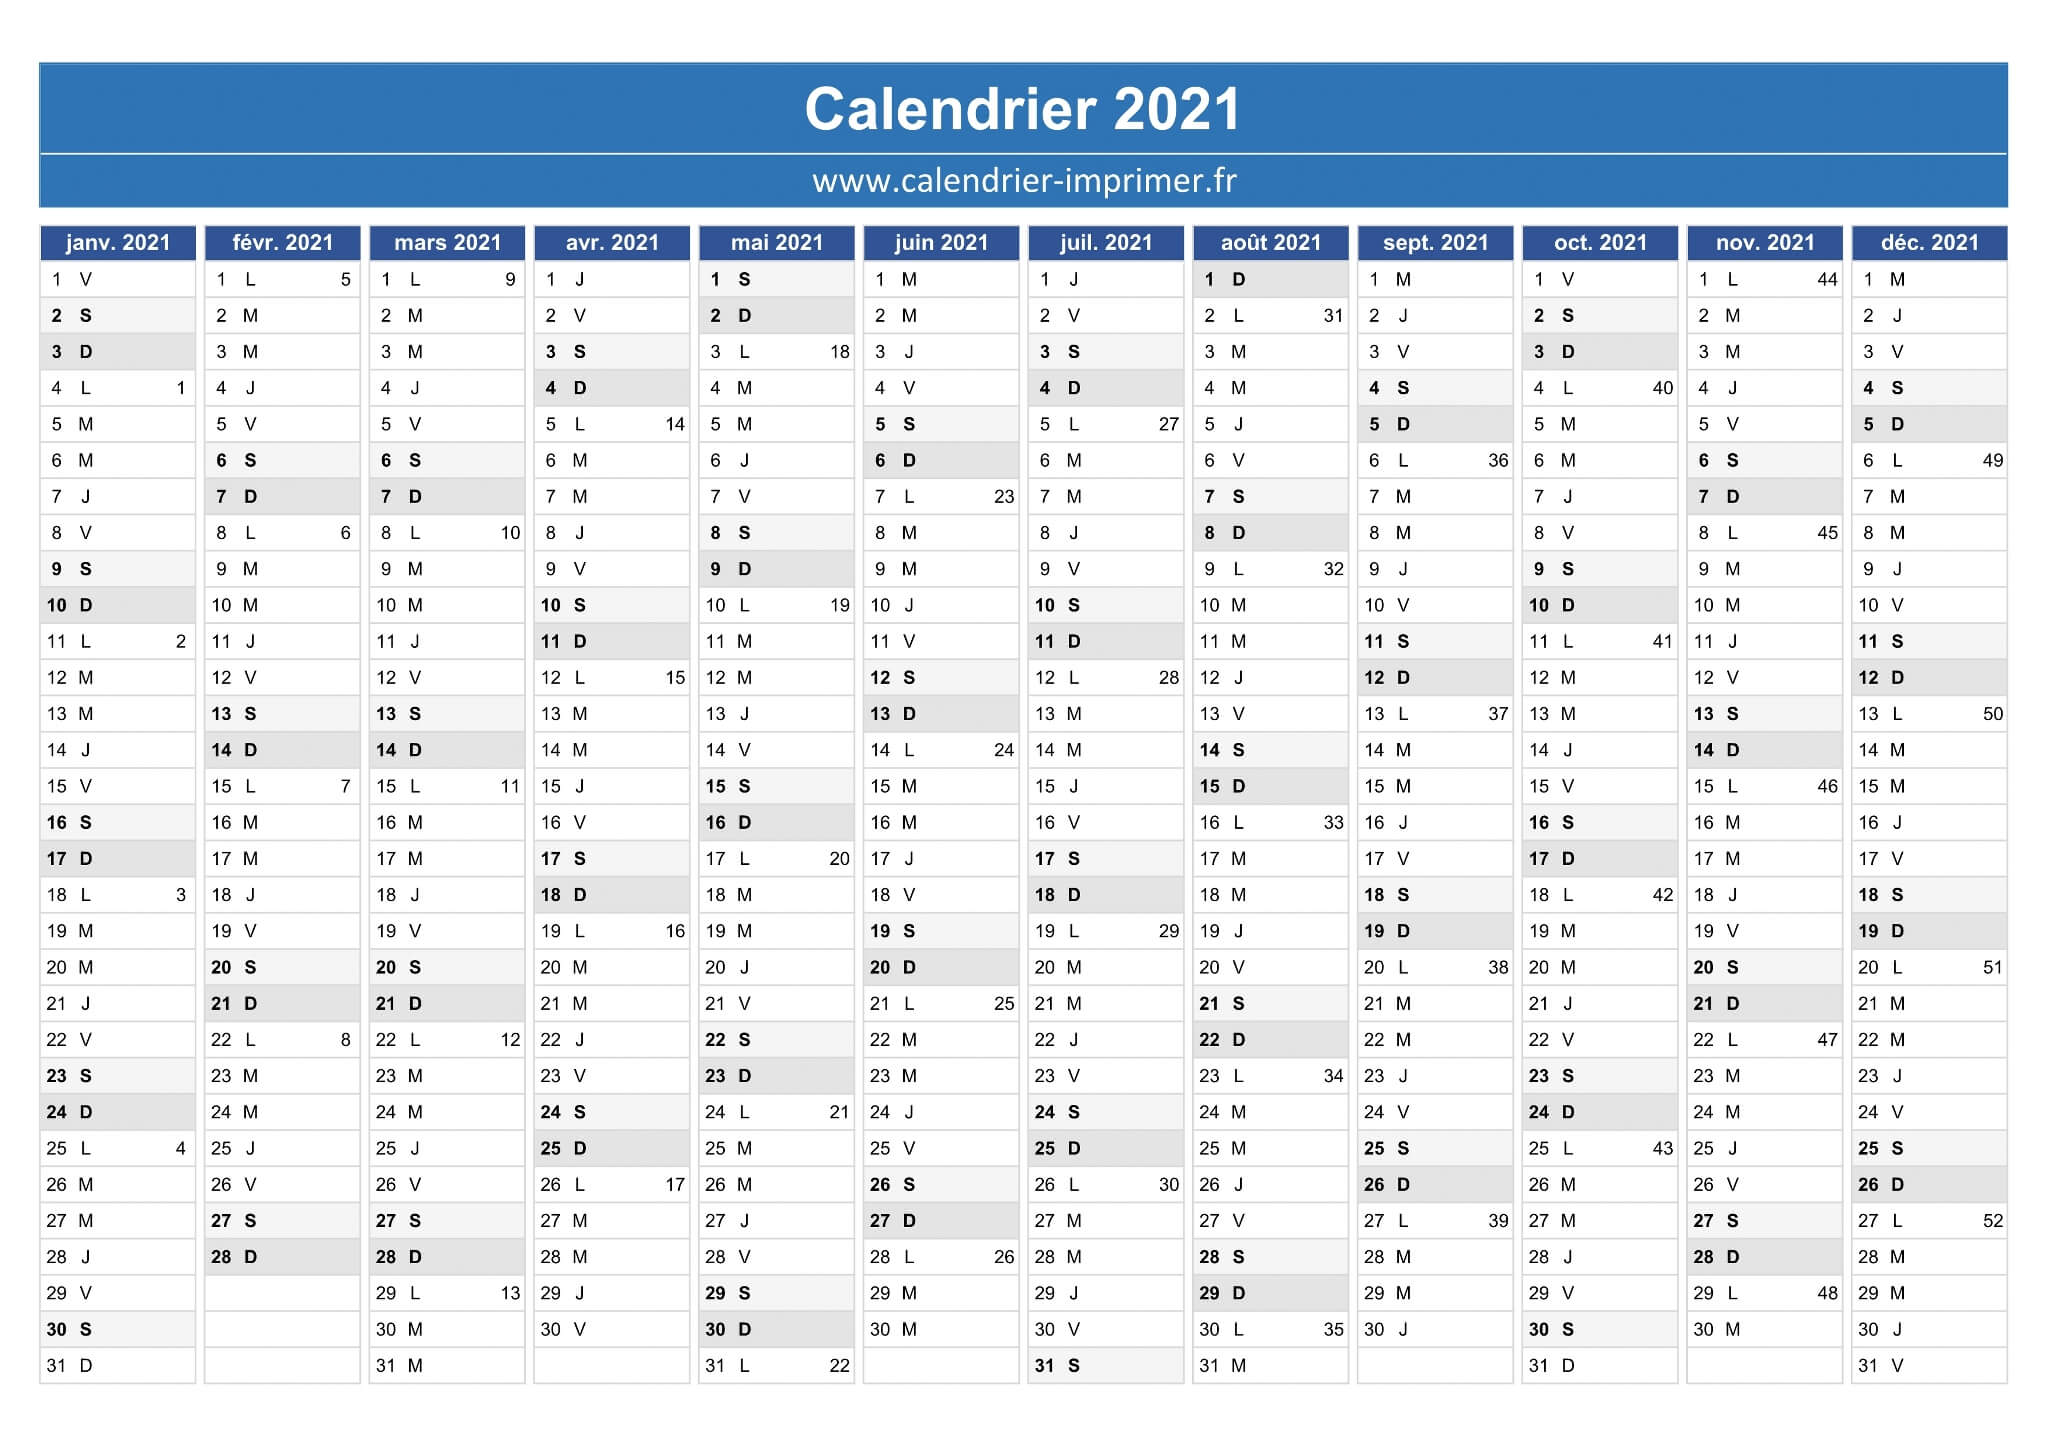 Calendrier 2021 à télécharger au format Excel et PDF